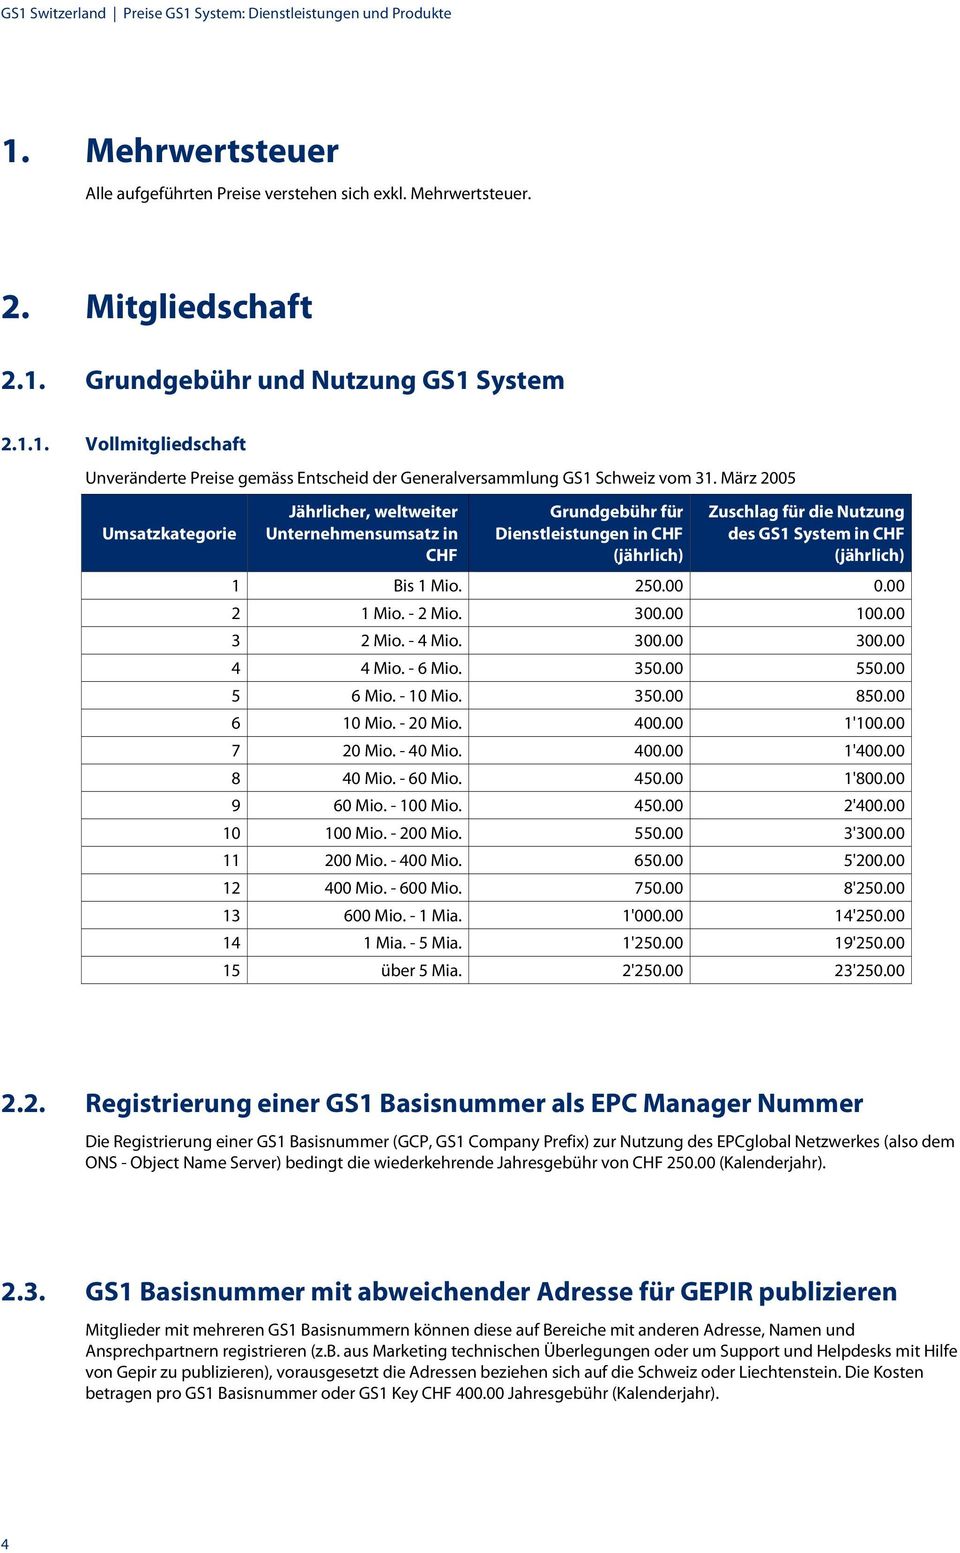 März 2005 Umsatzkategorie Jährlicher, weltweiter Unternehmensumsatz in CHF Grundgebühr für Dienstleistungen in CHF (jährlich) Zuschlag für die Nutzung des GS1 System in CHF (jährlich) 1 Bis 1 Mio.